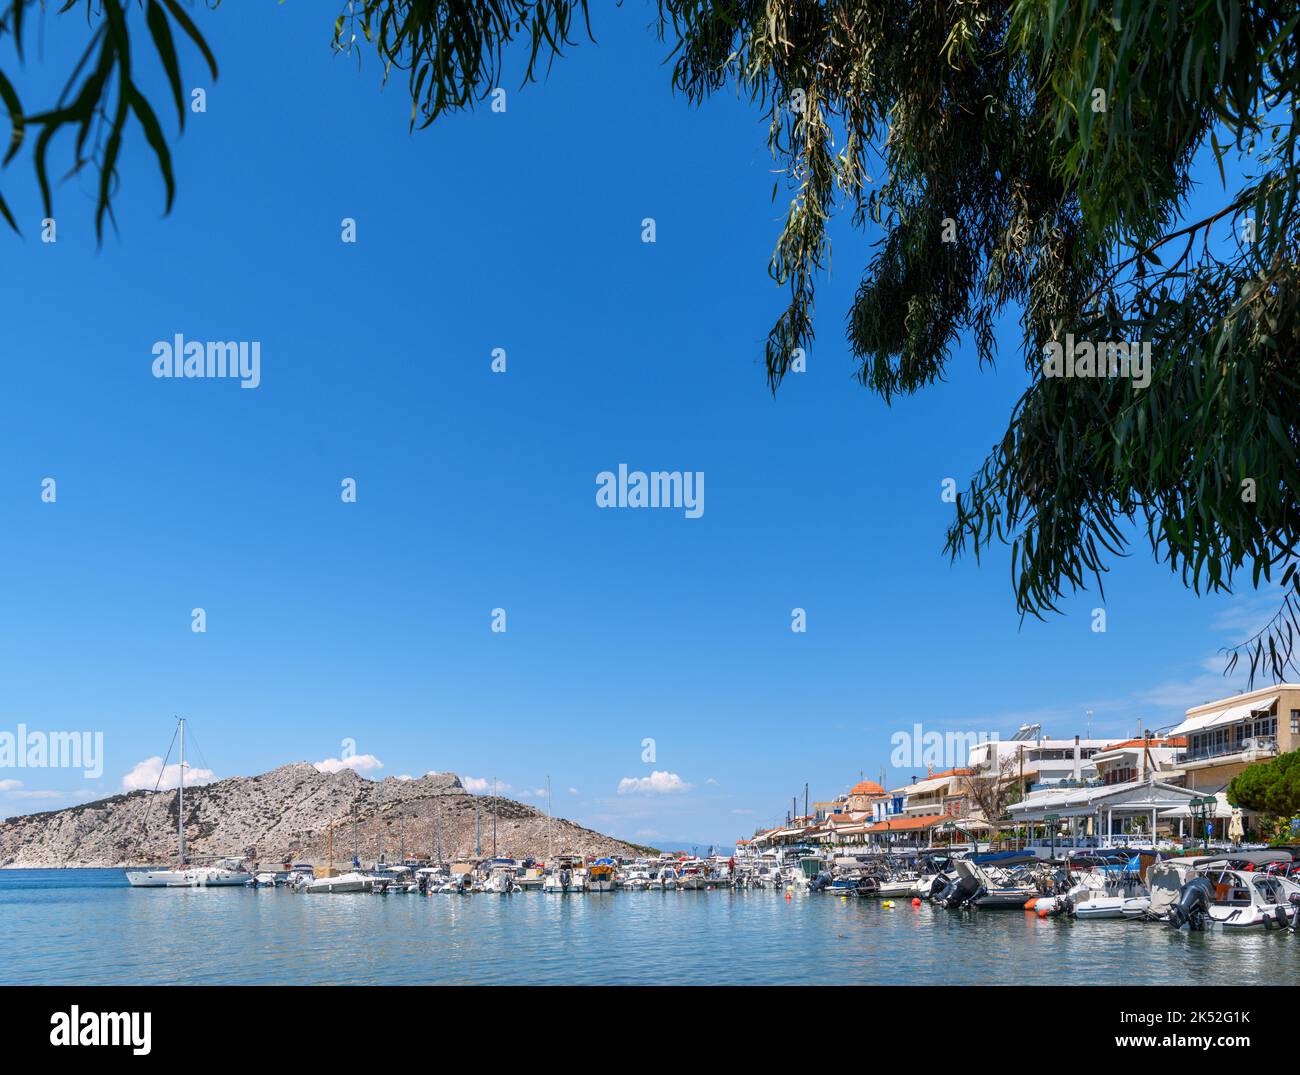 Boote im Hafen in Perdika, Ägina, Saronische Inseln, Griechenland Stockfoto